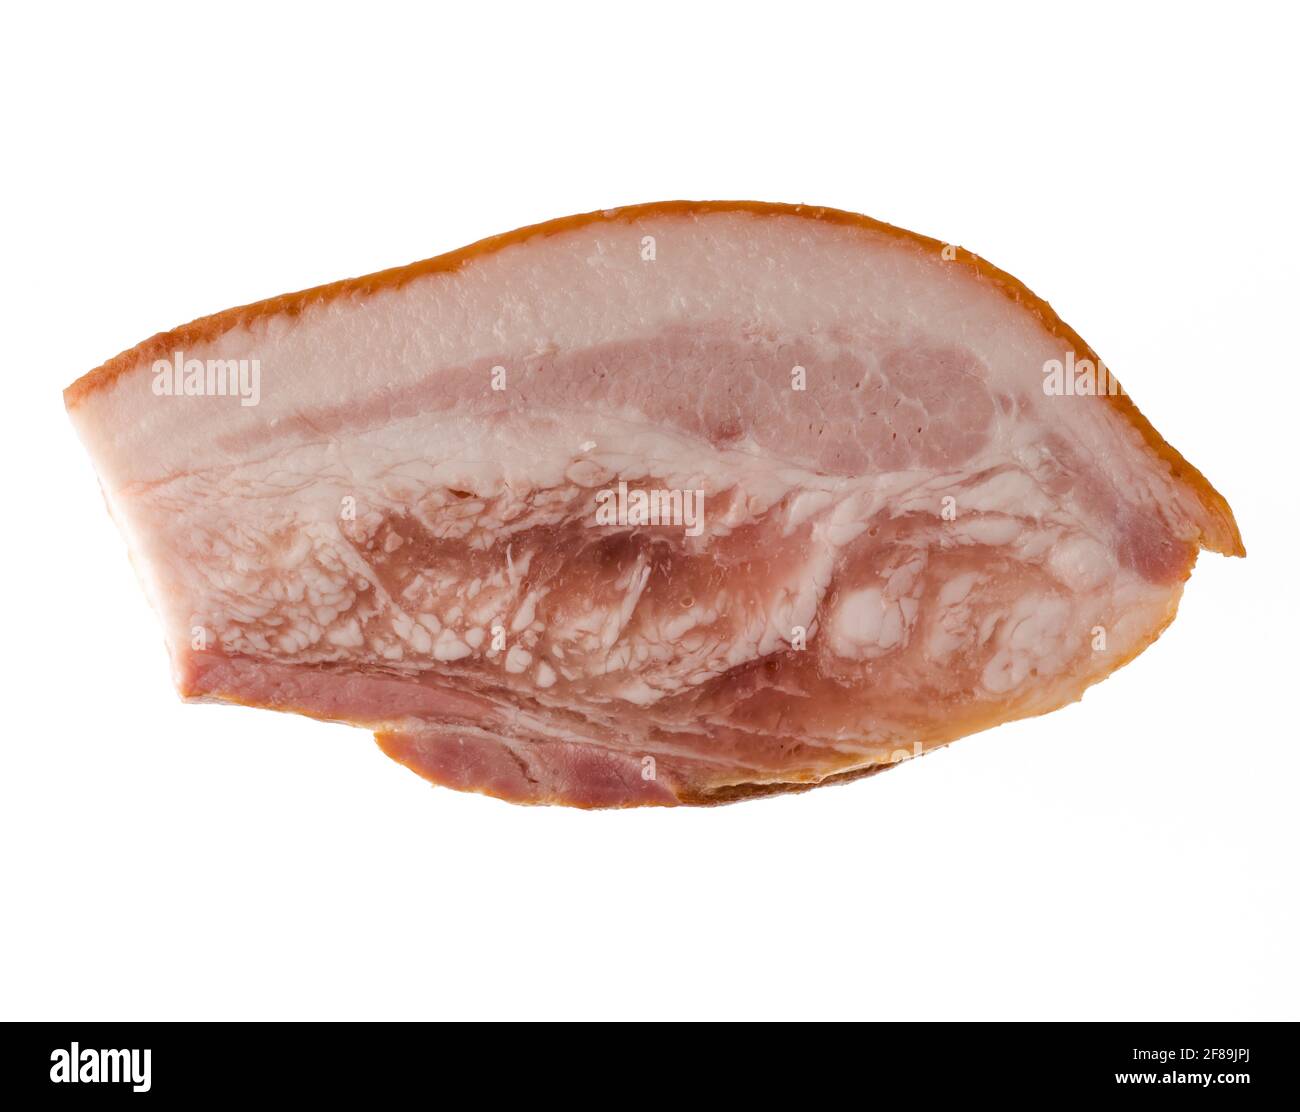 Morceau épais de saindoux de porc fumé, appétissant et préparé, avec des couches de viande, sur un fond blanc isolé Banque D'Images